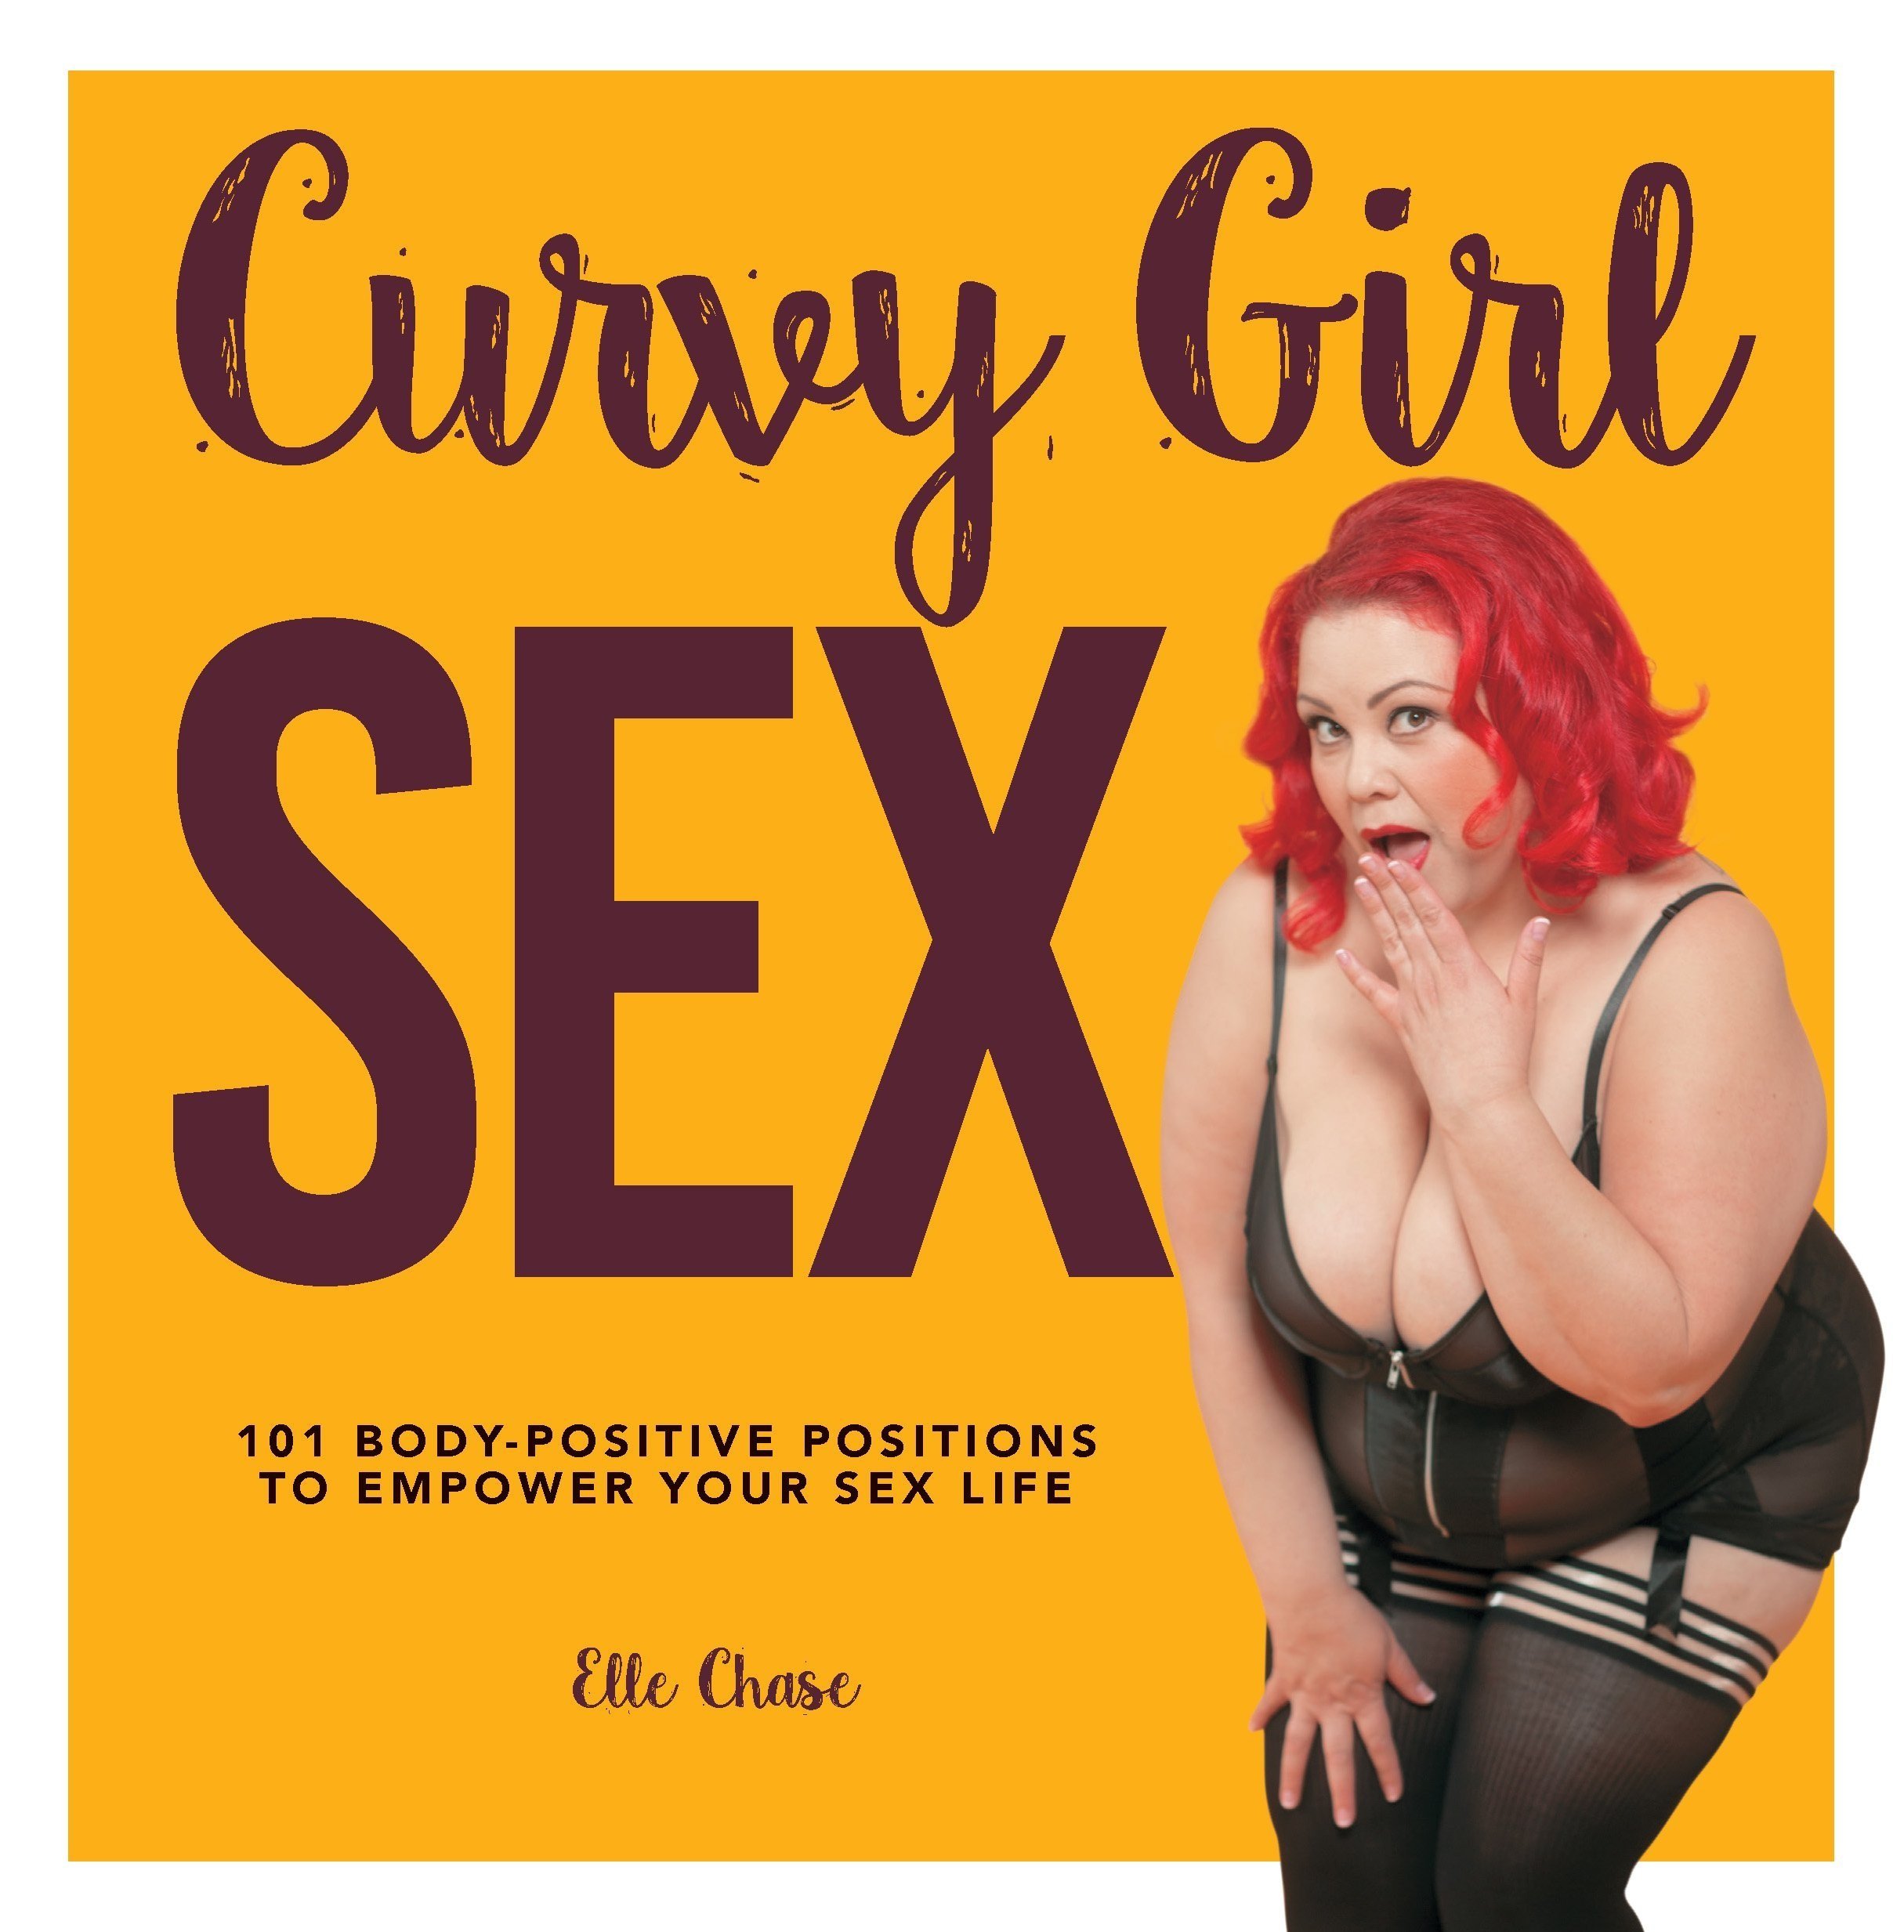 Curvy+girl+sex.jpg